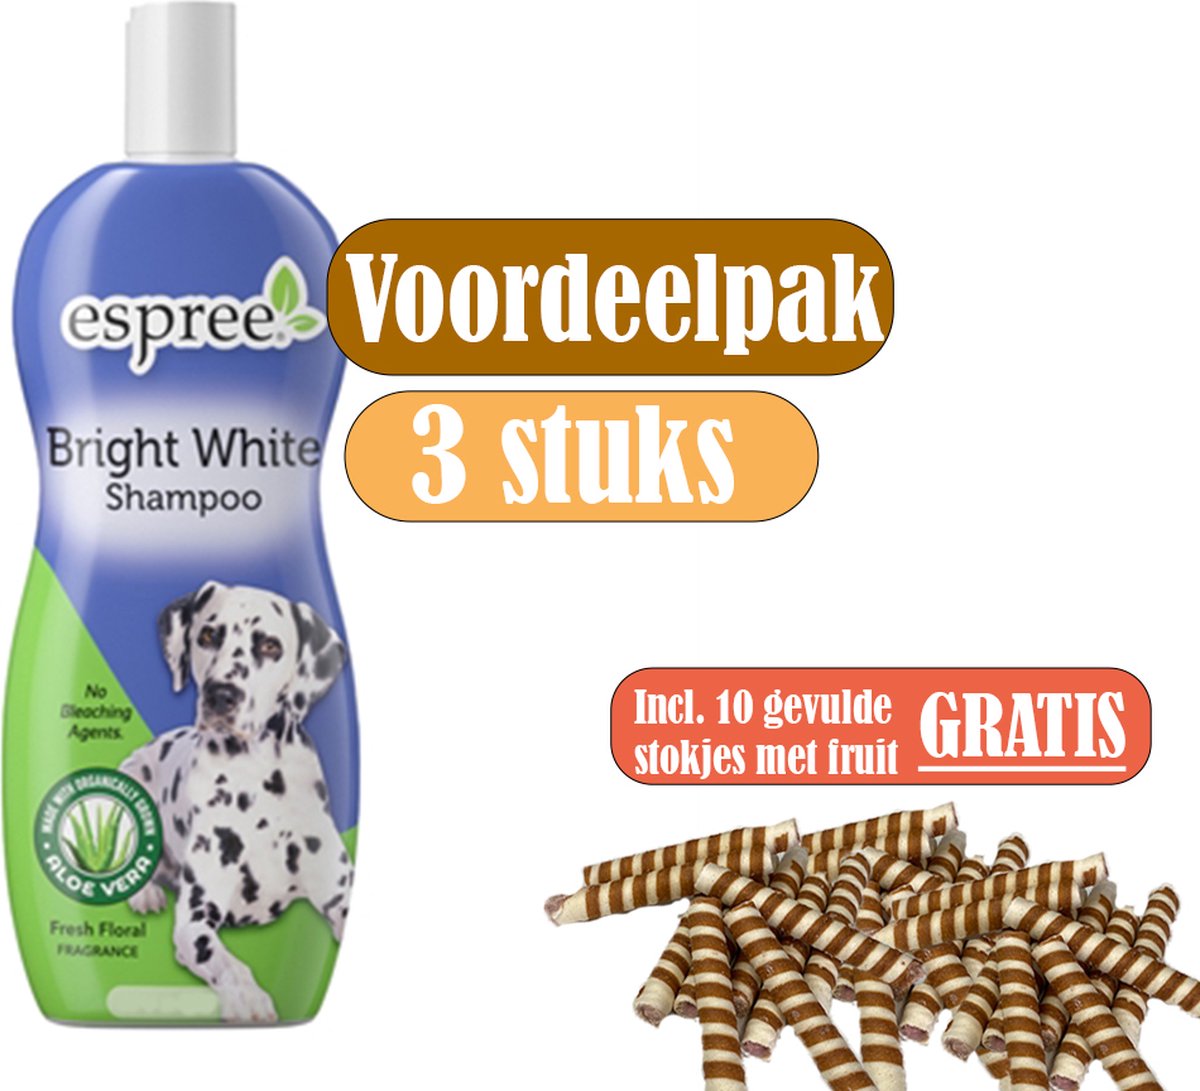 Espree Shampoo Lichtgevend Wit - Voordeelpak 3 stuks - inclusief gratis stokjes gevuld met fruit (10 stuks)